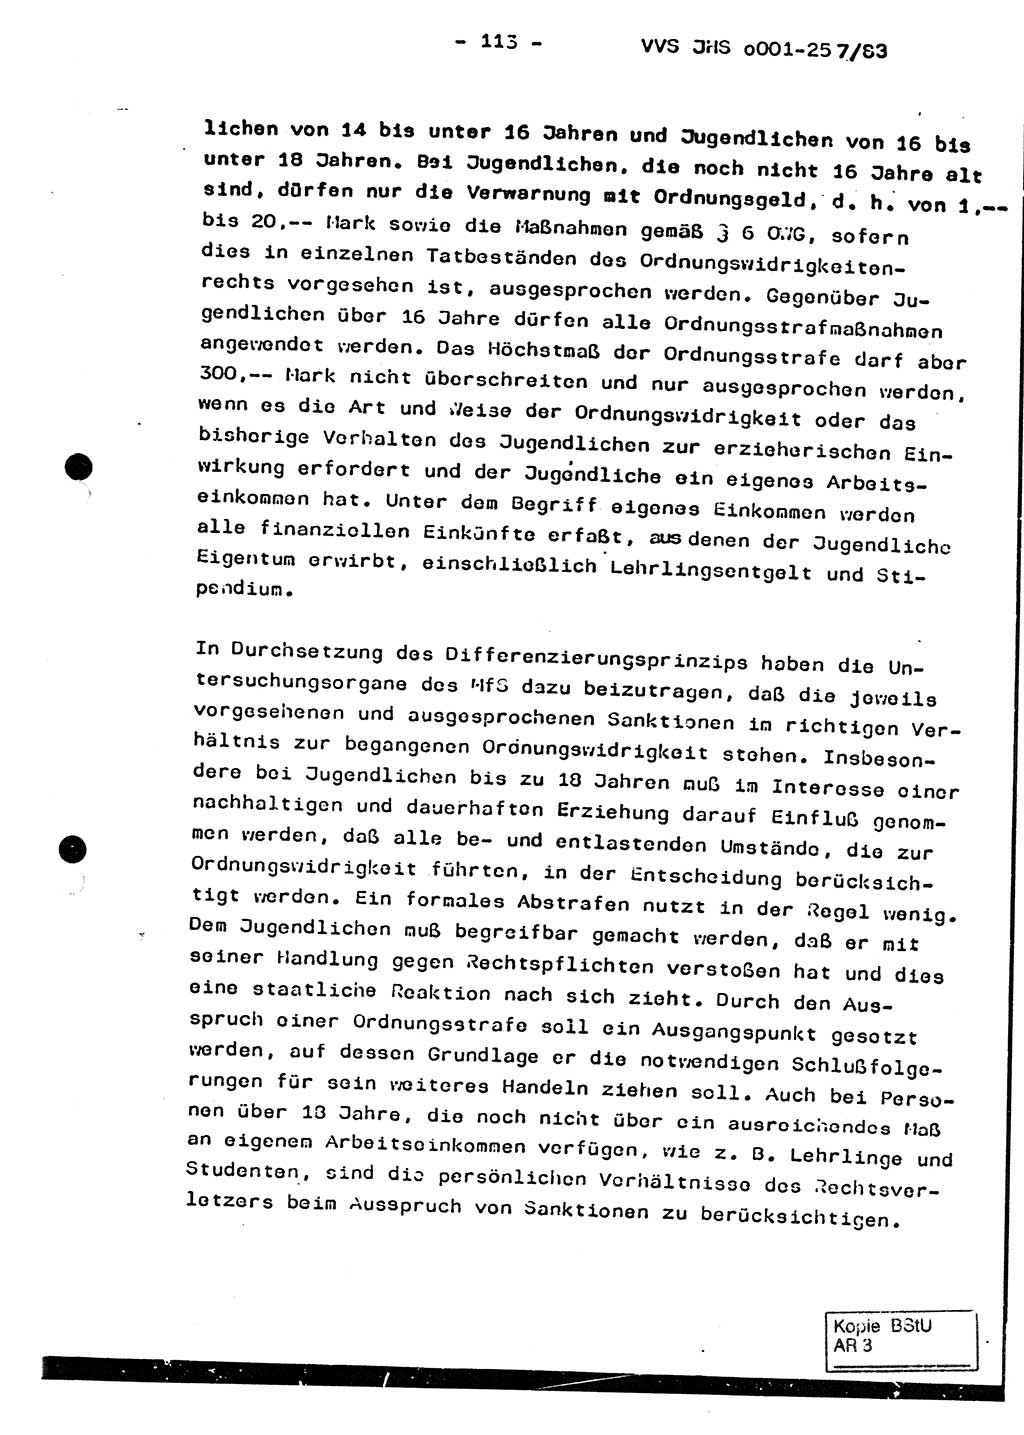 Dissertation, Oberst Helmut Lubas (BV Mdg.), Oberstleutnant Manfred Eschberger (HA IX), Oberleutnant Hans-Jürgen Ludwig (JHS), Ministerium für Staatssicherheit (MfS) [Deutsche Demokratische Republik (DDR)], Juristische Hochschule (JHS), Vertrauliche Verschlußsache (VVS) o001-257/83, Potsdam 1983, Seite 113 (Diss. MfS DDR JHS VVS o001-257/83 1983, S. 113)